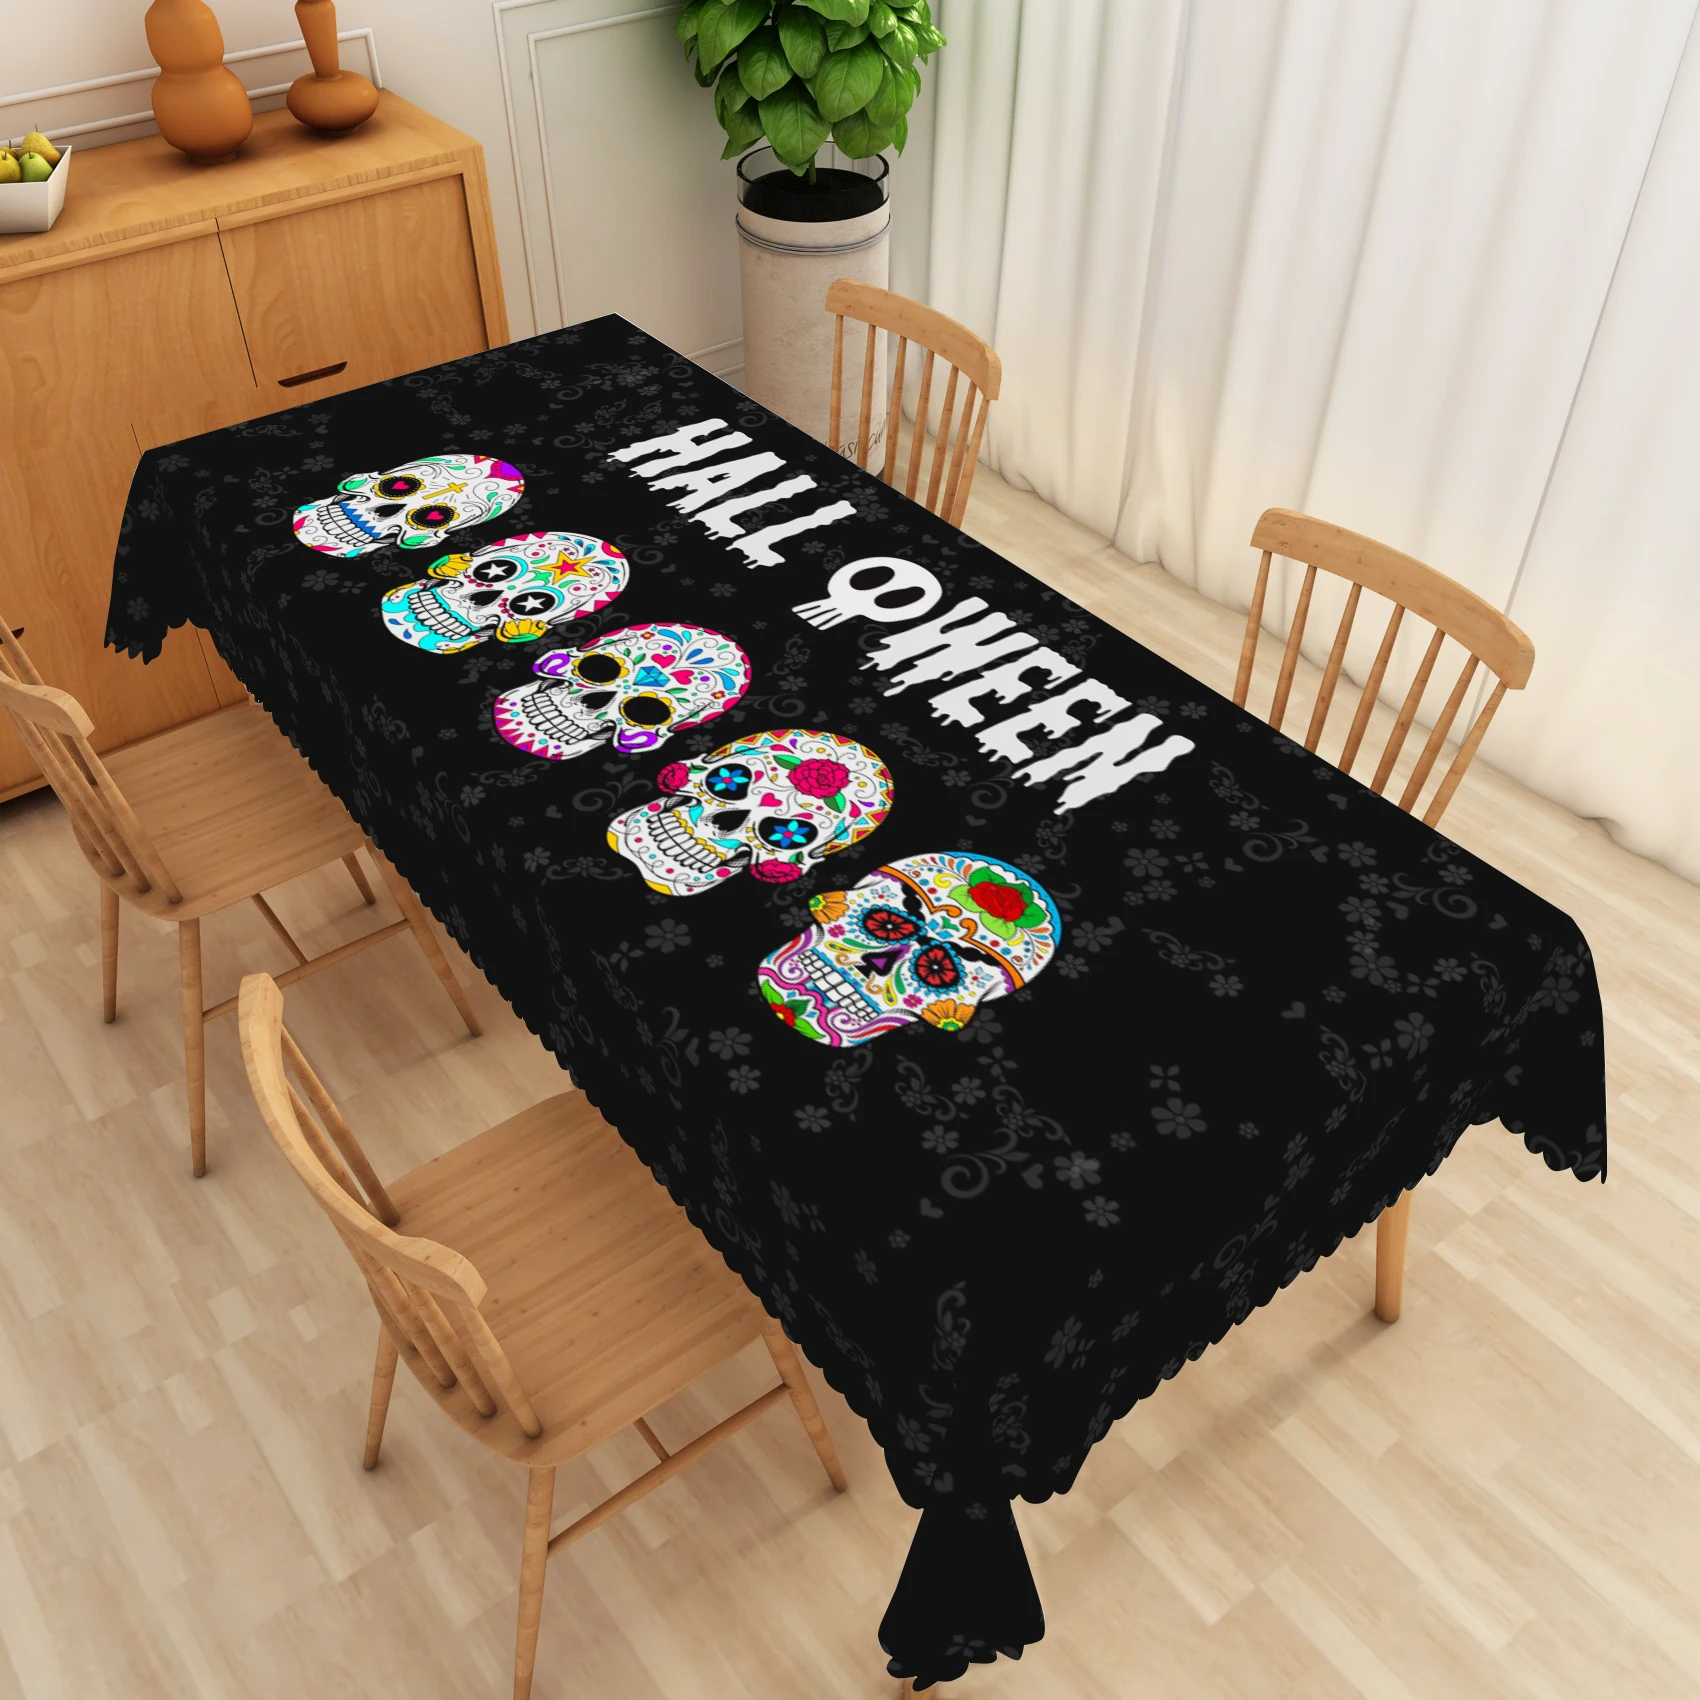 Полиэстеровый прямоугольный столик на День мертвых мексиканского карнавала с изображением сахарных черепов, водонепроницаемый, подходит для вечеринок и декорирования кухни.